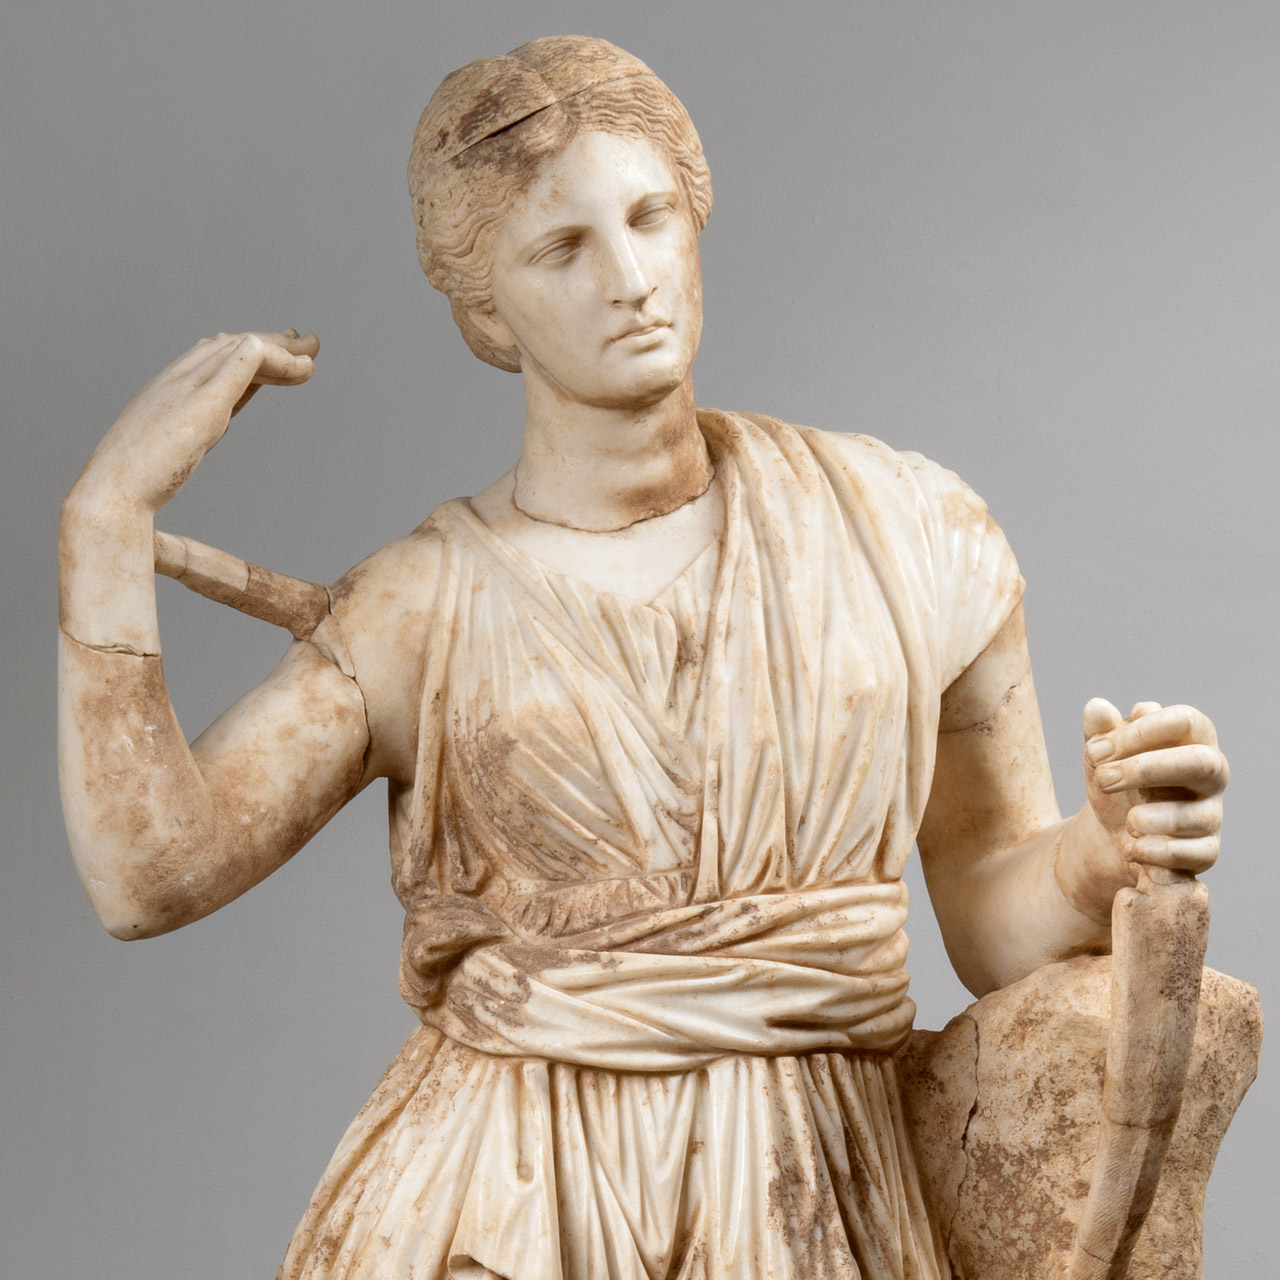 Μαρμάρινο άγαλμα Αρτέμιδος, ρωμαϊκό αντίγραφο ενός πρωτότυπου έργου του 4ου αι. π.Χ.